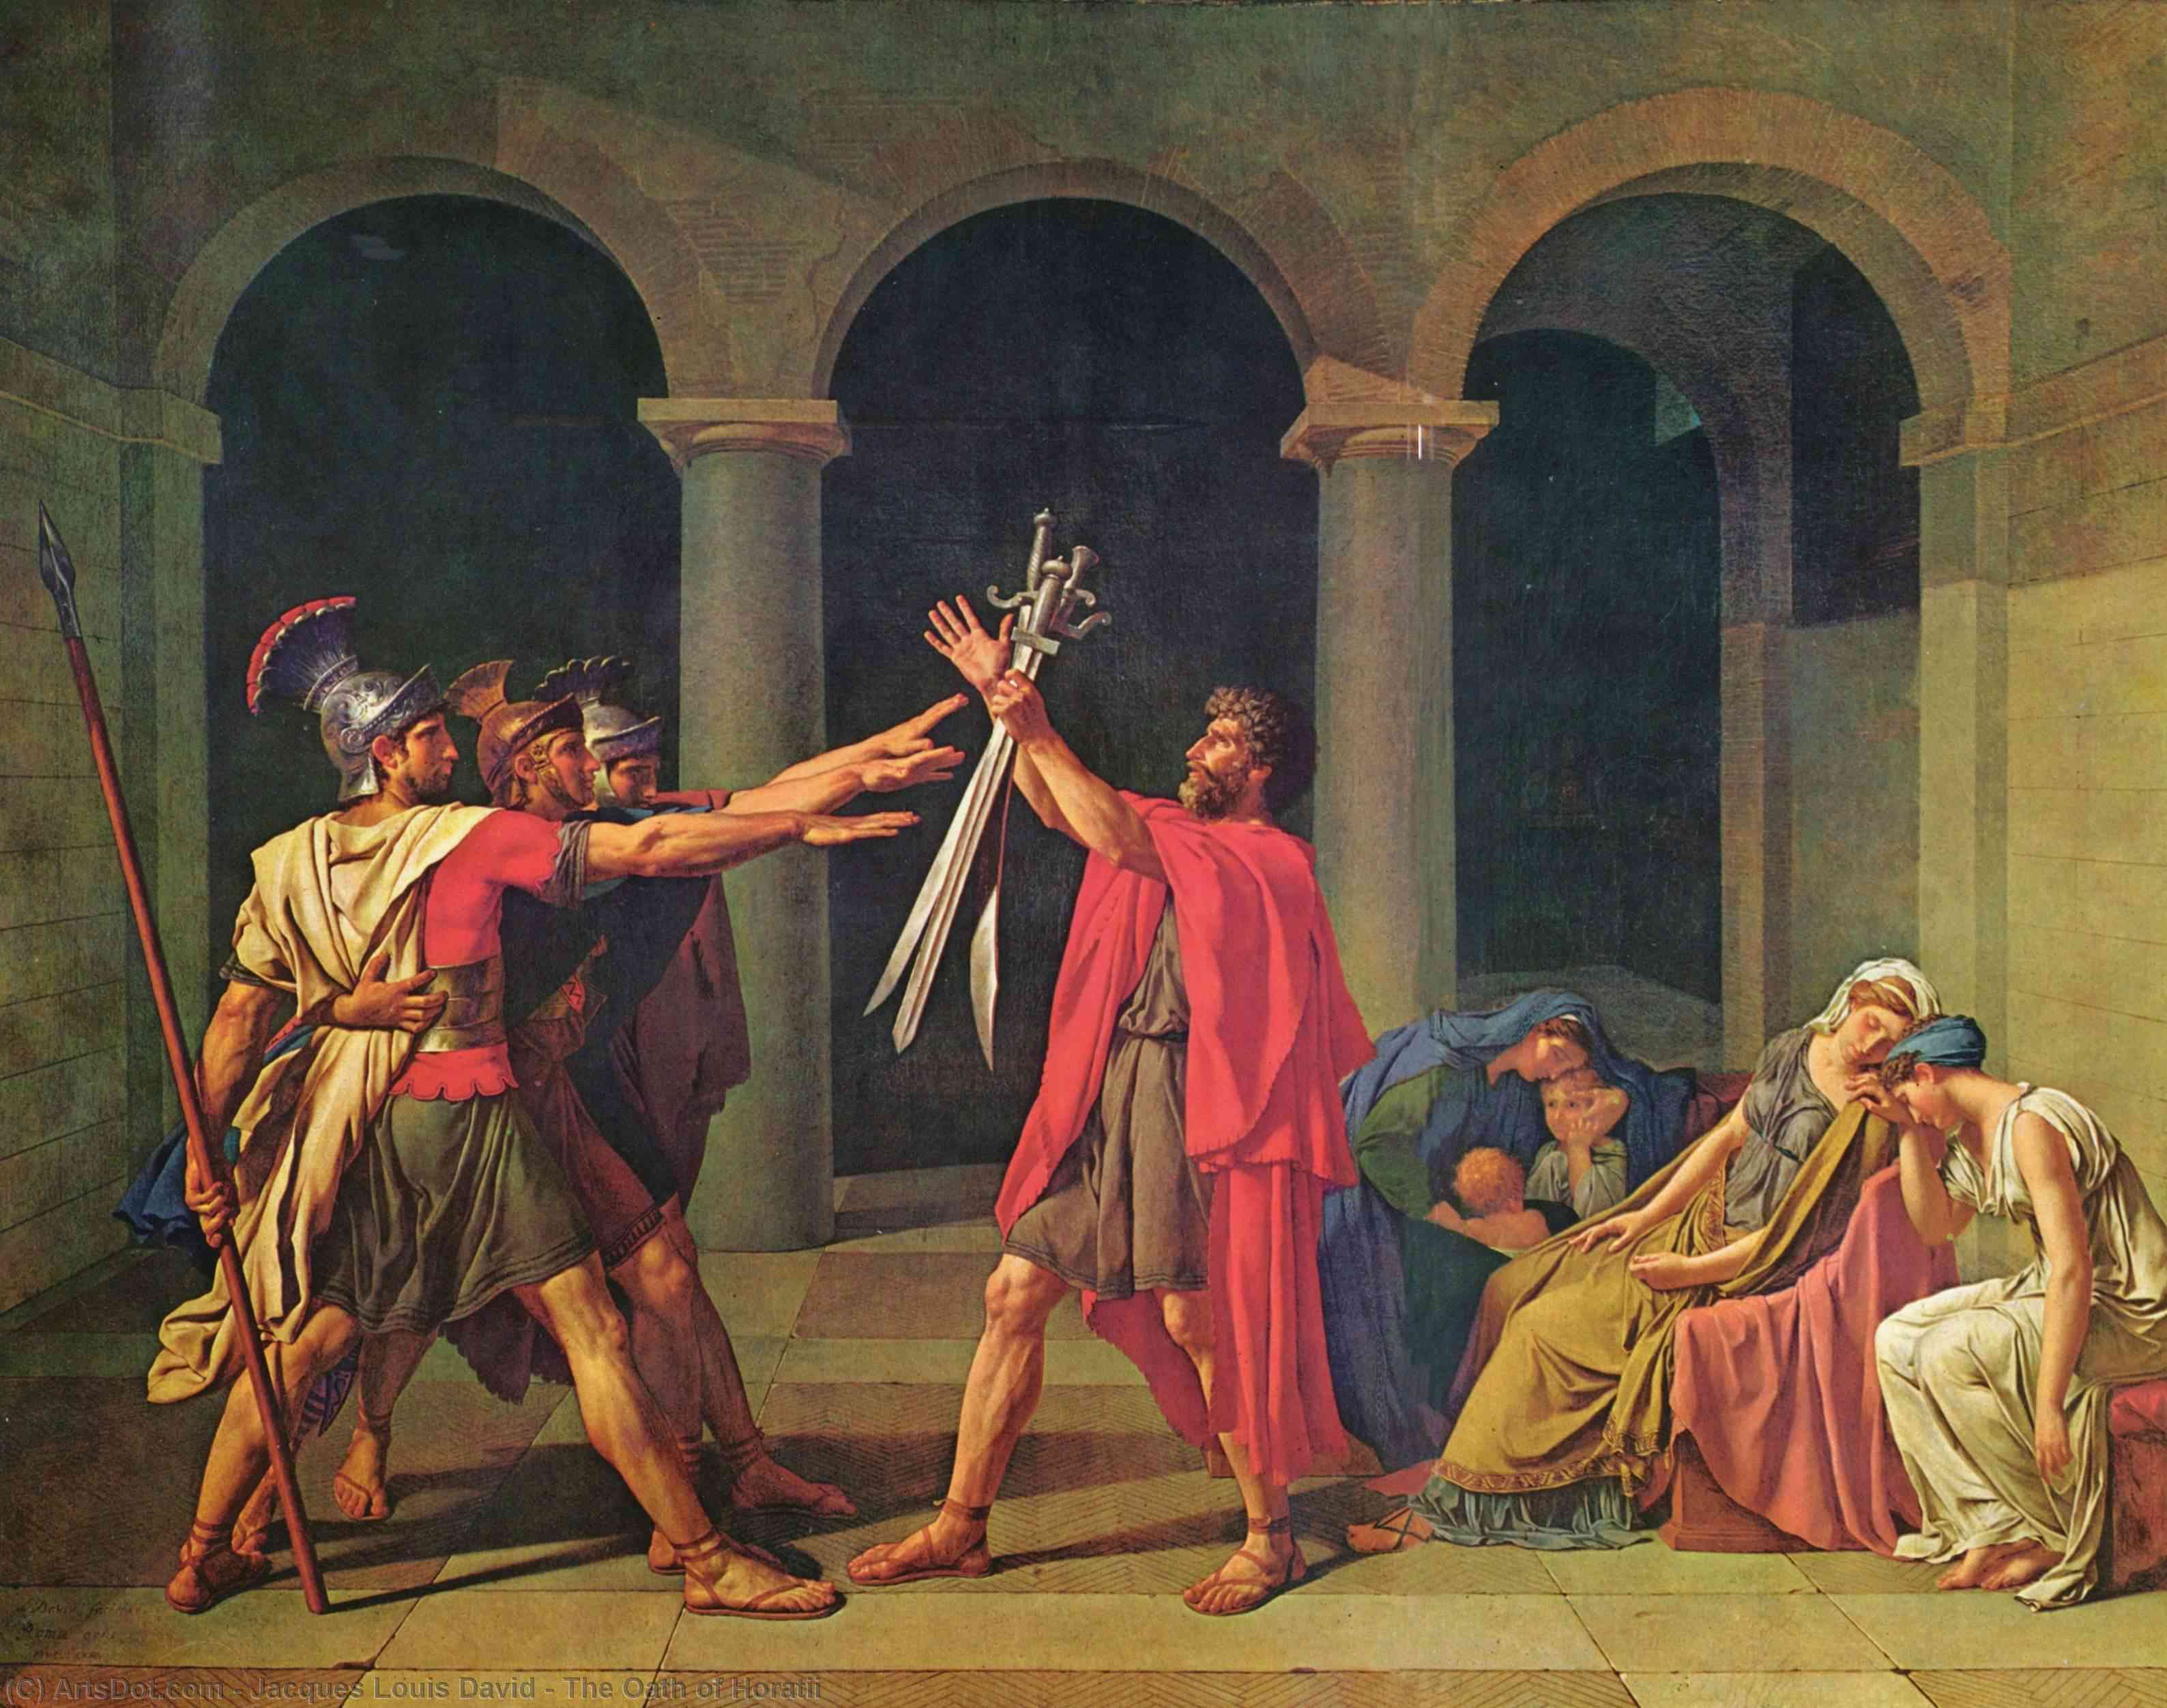 WikiOO.org - دایره المعارف هنرهای زیبا - نقاشی، آثار هنری Jacques Louis David - The Oath of Horatii